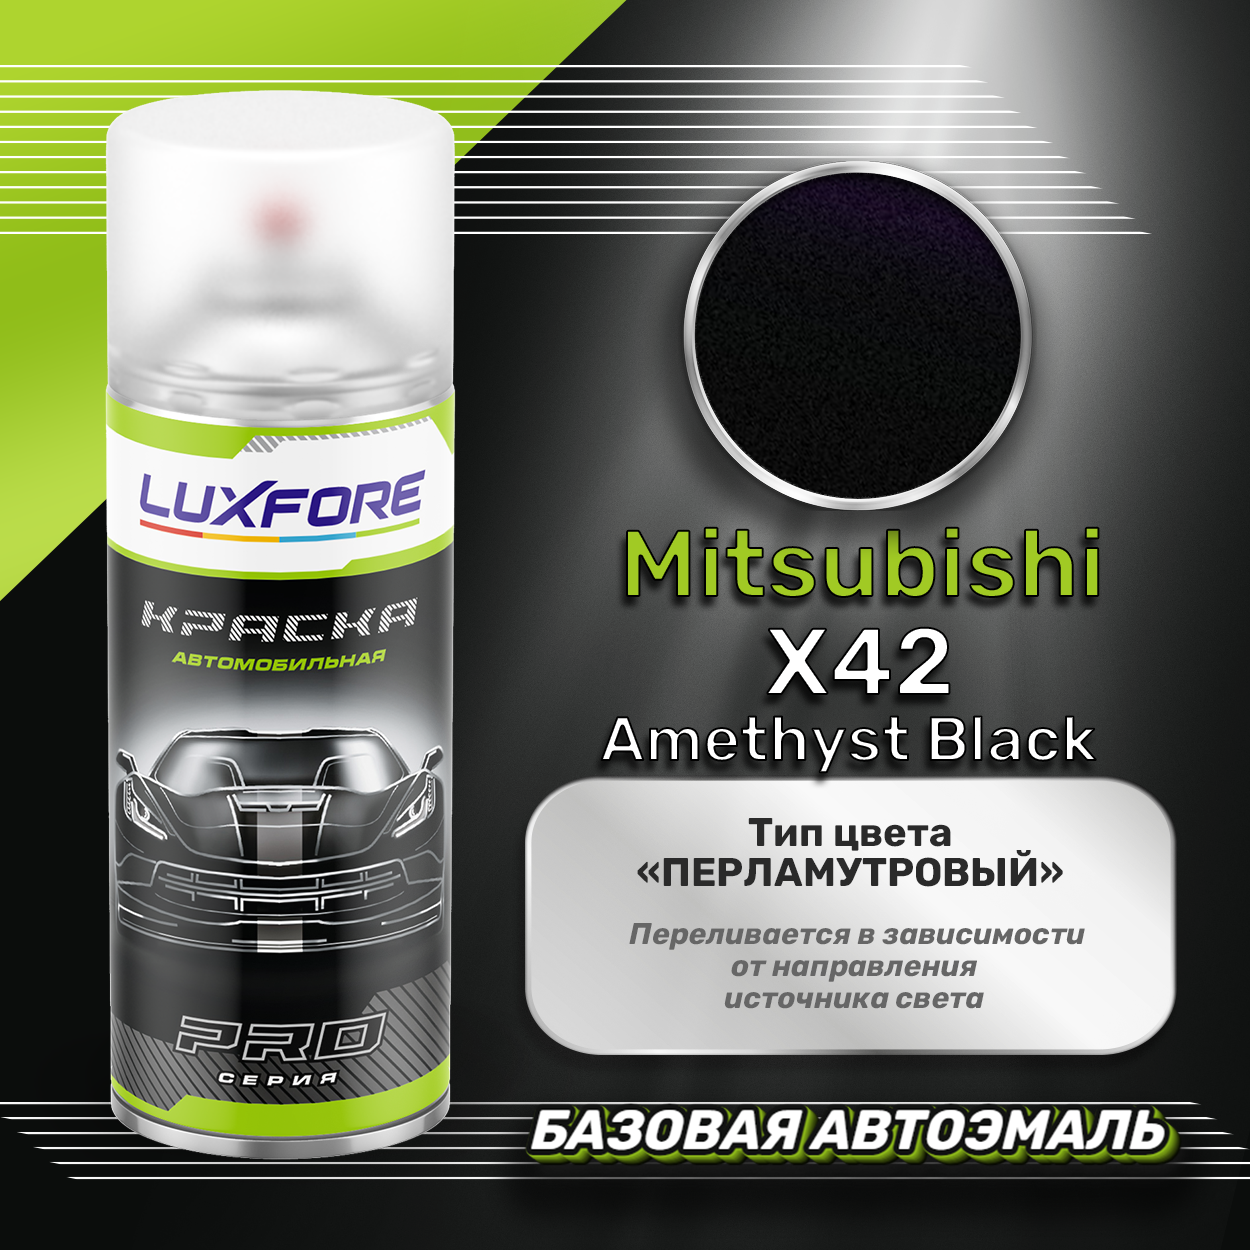 Luxfore аэрозольная краска Mitsubishi X42 Amethyst Black 400 мл